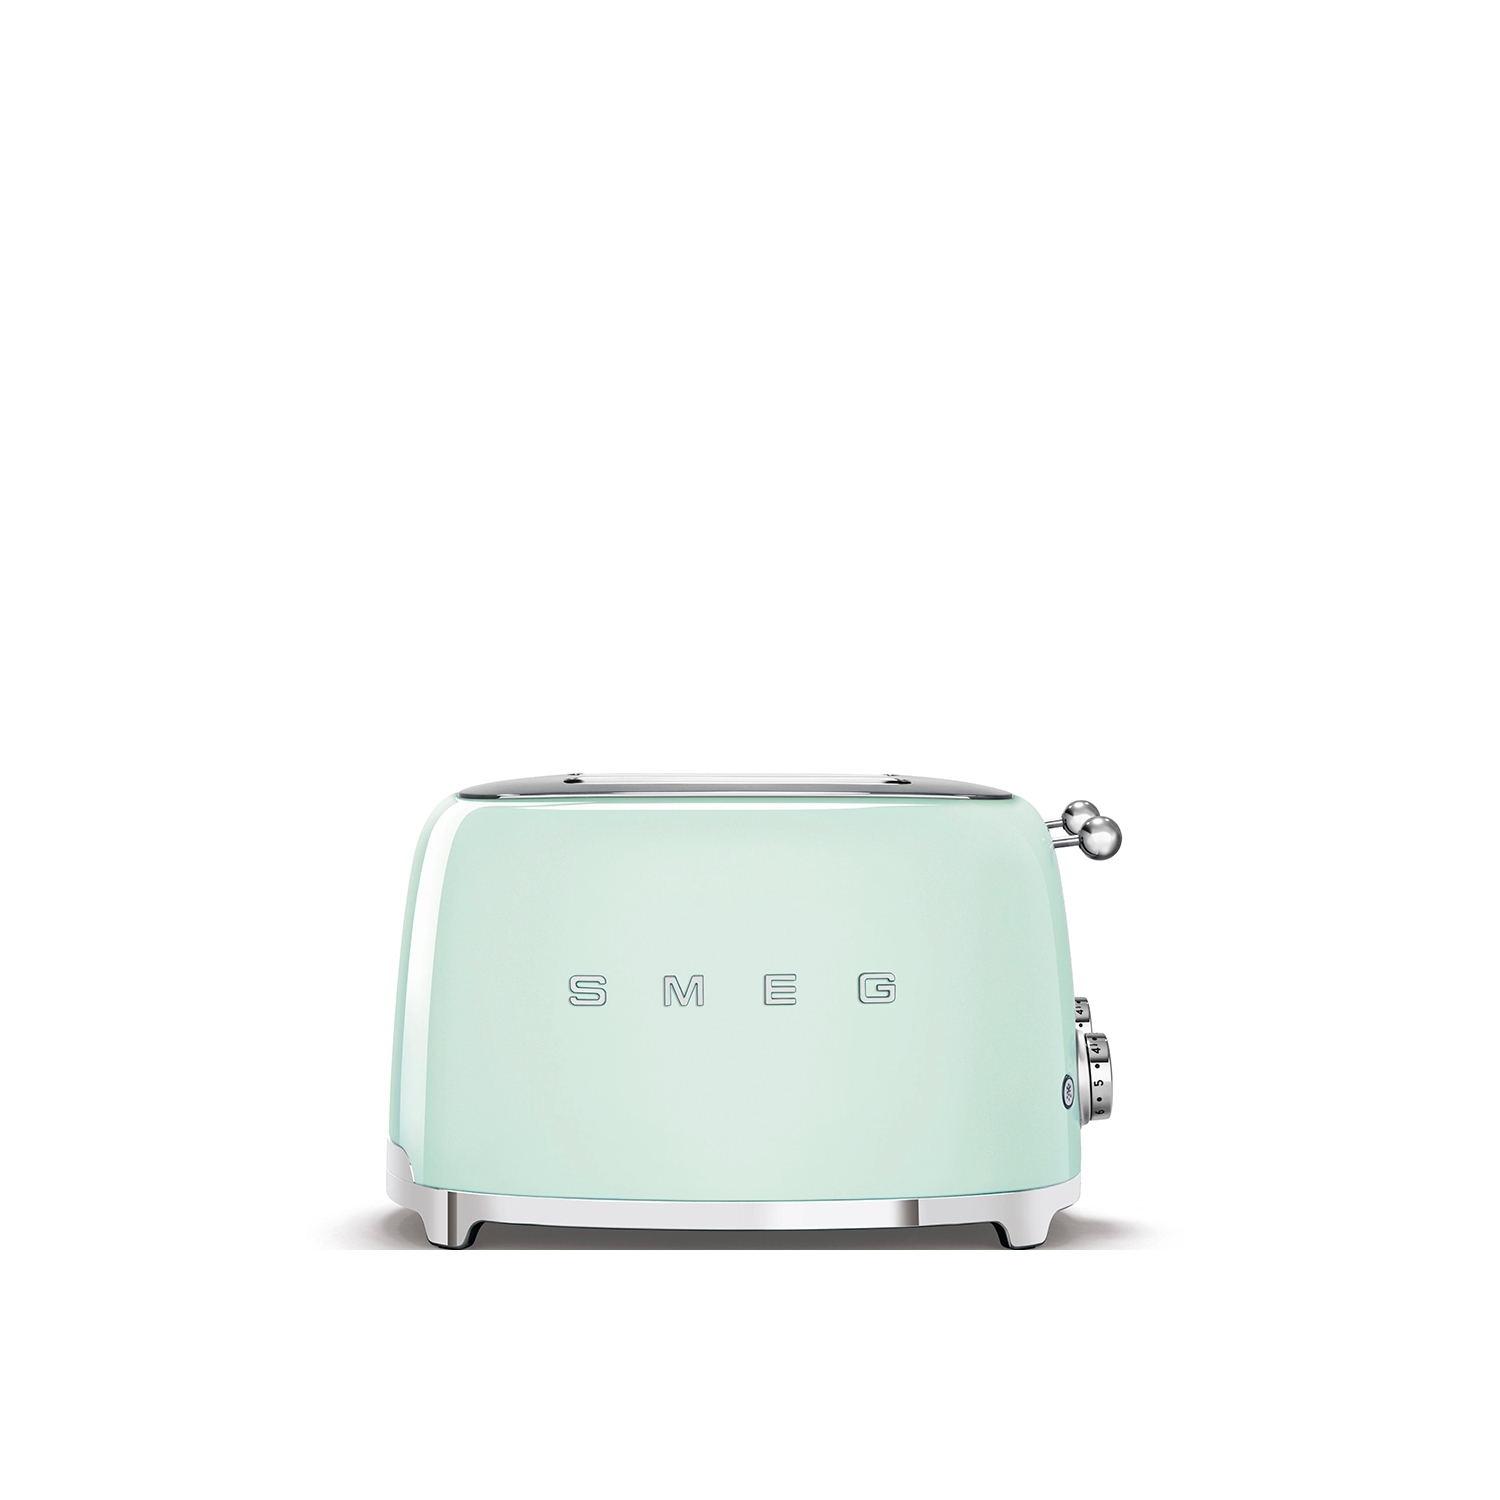 Smeg 4 Slice Toaster - Pastel Green - 0